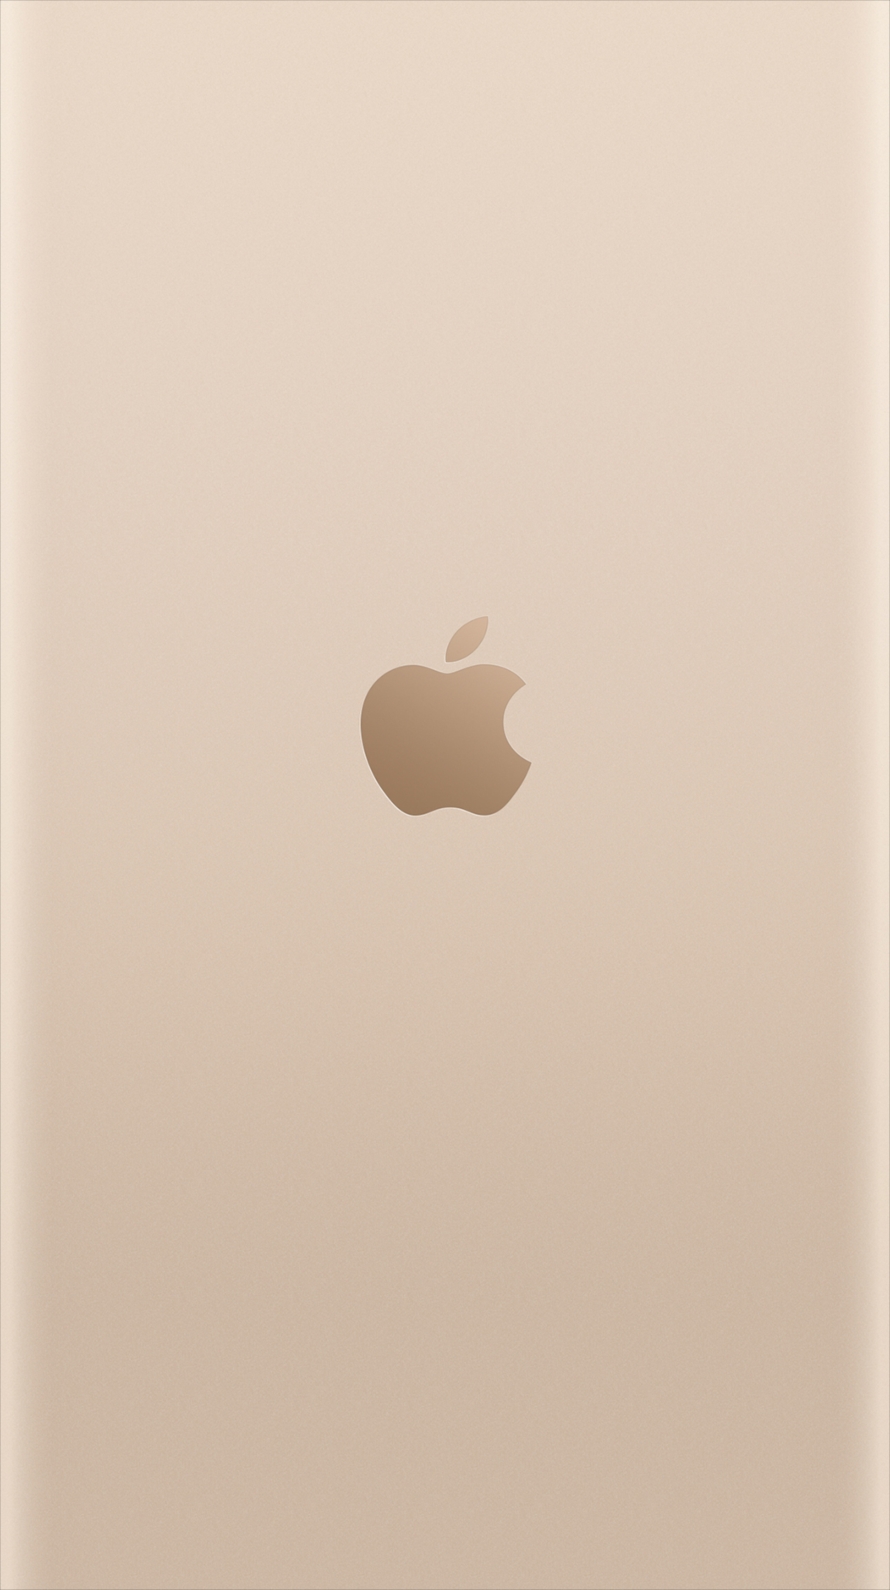 ライトゴールド アップルロゴ Iphone6壁紙 Wallpaperbox